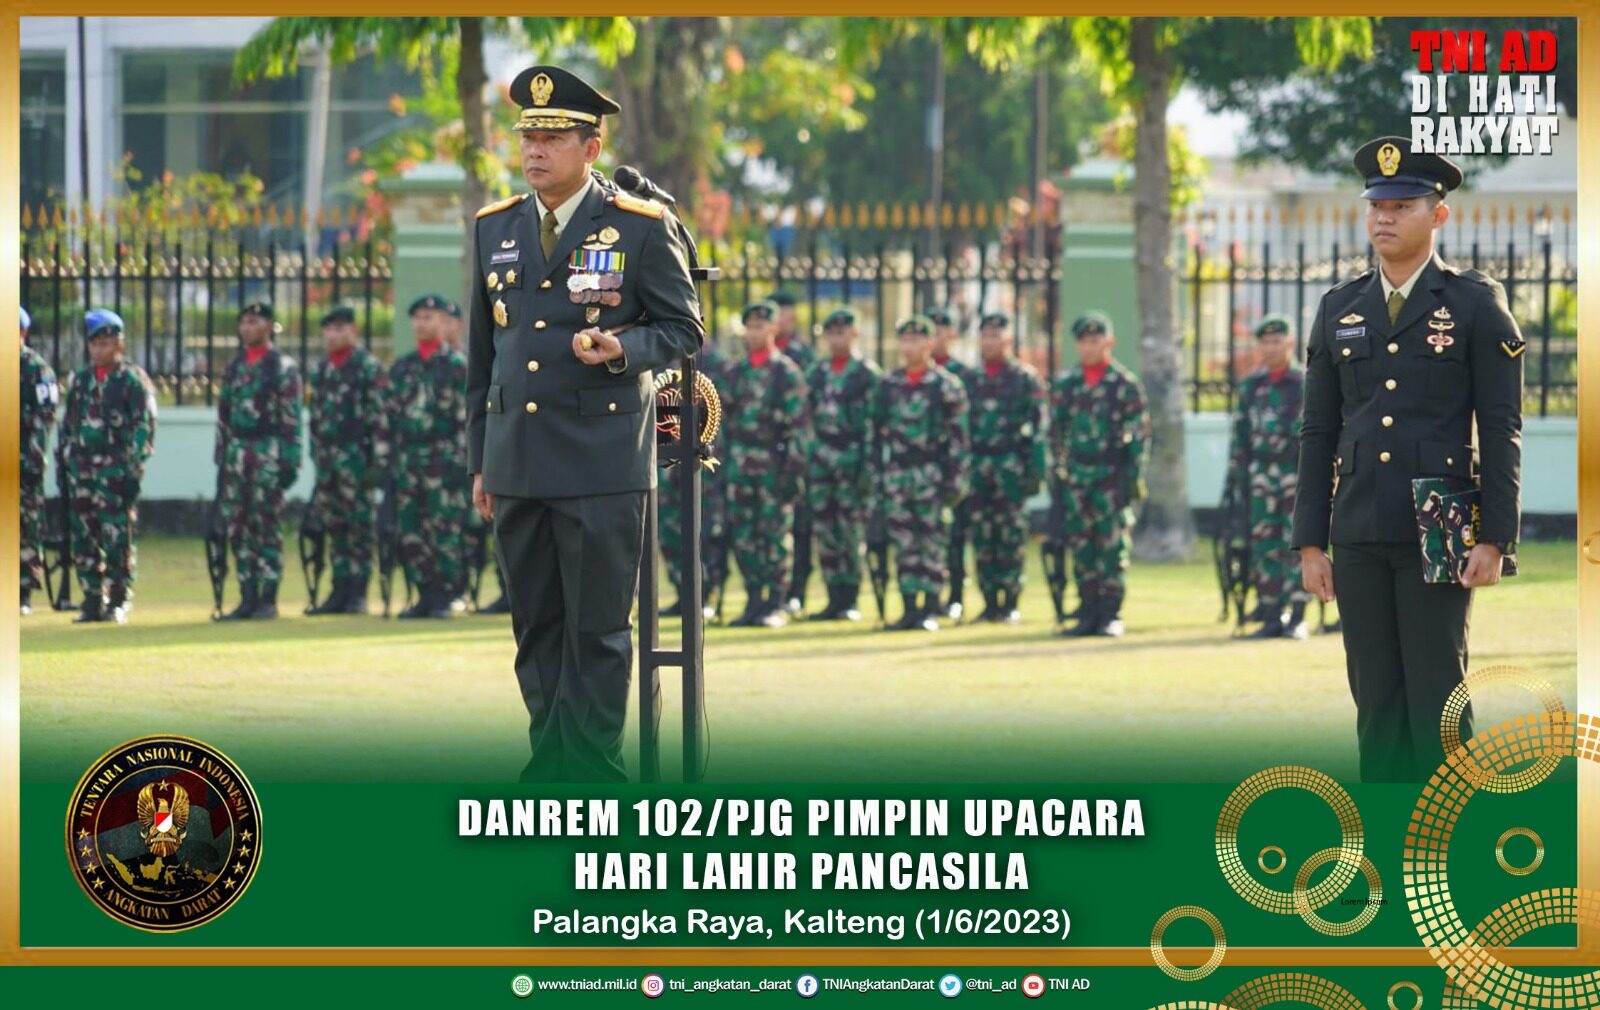 Danrem 102/Pjg Pimpin Upacara Hari lahir Pancasila